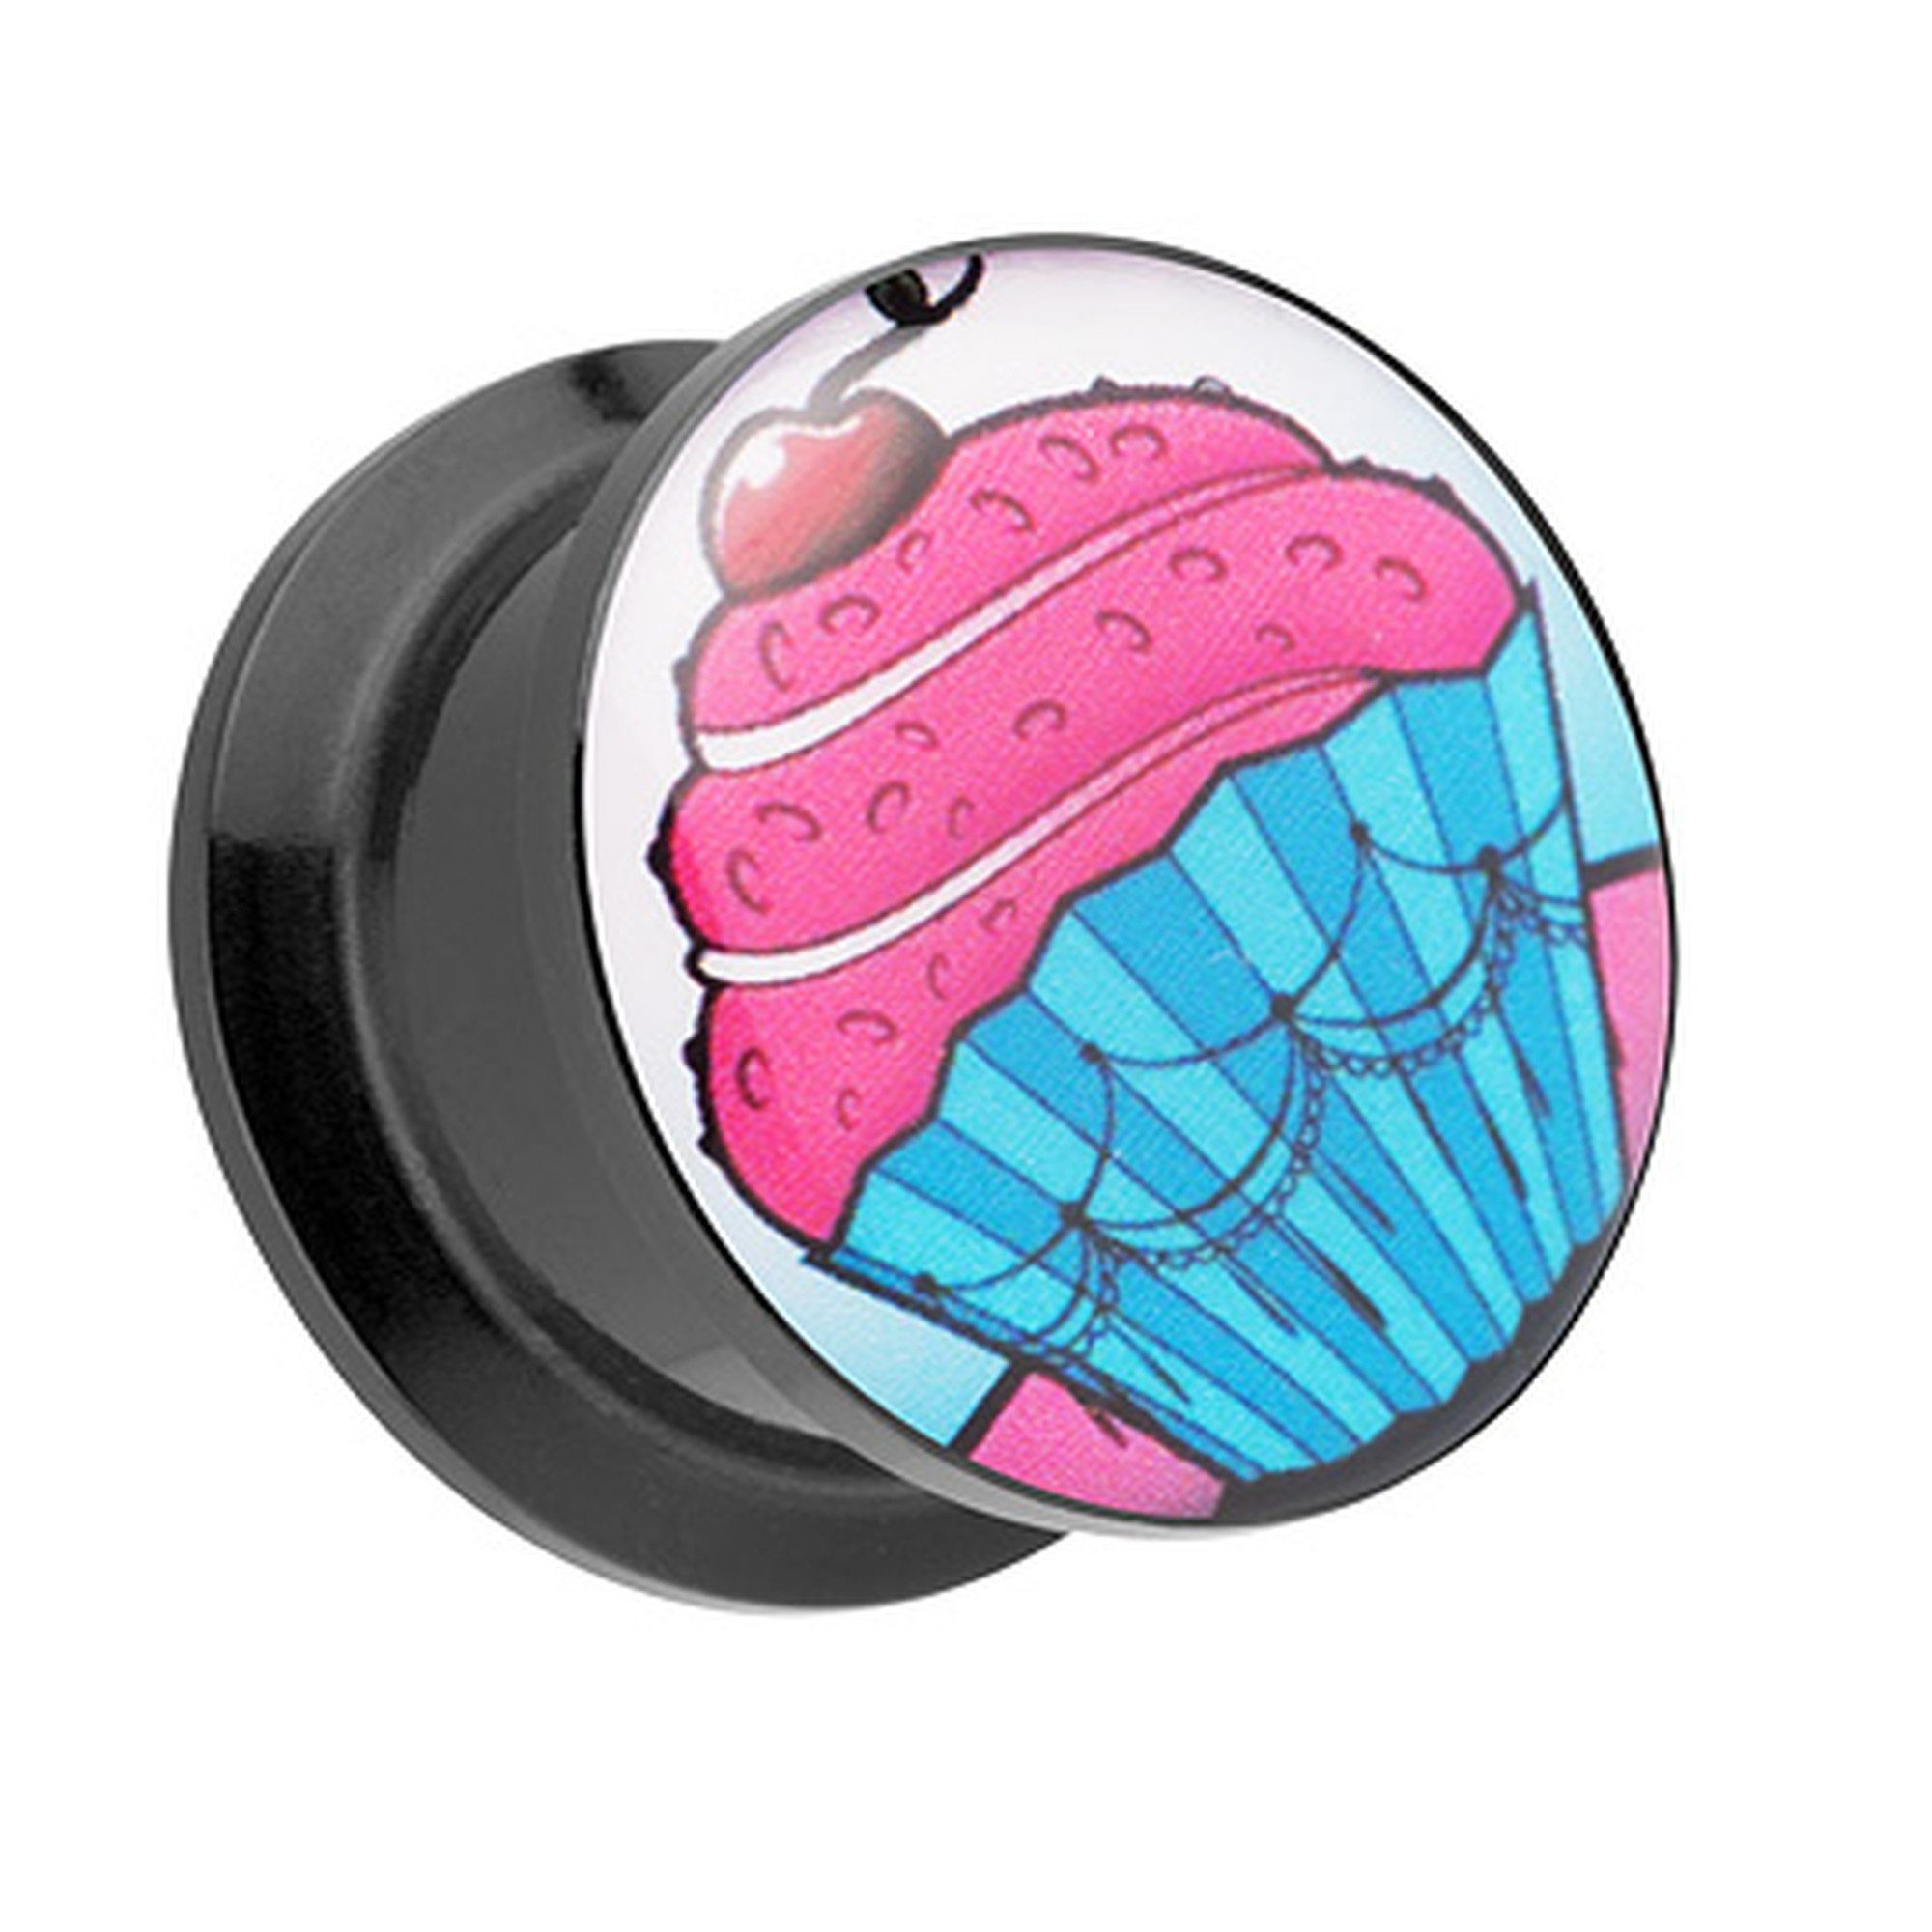 Taffstyle Plug Piercing Motiv, Schraub Kirsche Cupcake Schraubverschluß Ohrpiercing Muffin mit Flesh Tunnel Kunststoff Plug Ohr Picture